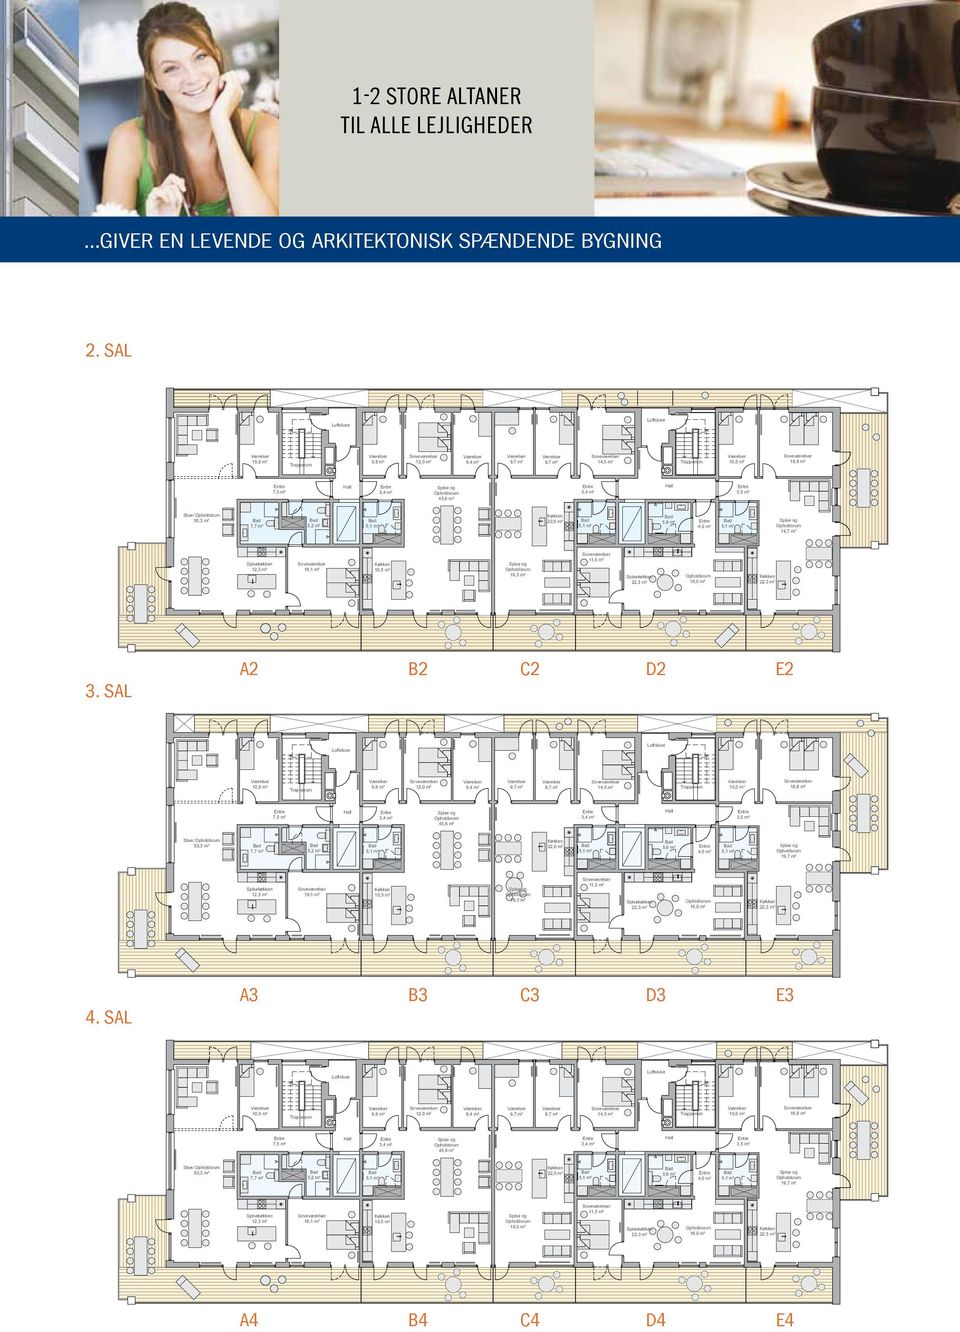 sal 7,5 m² 4 Stue/ 50,3 m² 7,7 m² 5,2 m² 1 12,3 m² 18,1 m² 10,5 m² 3.